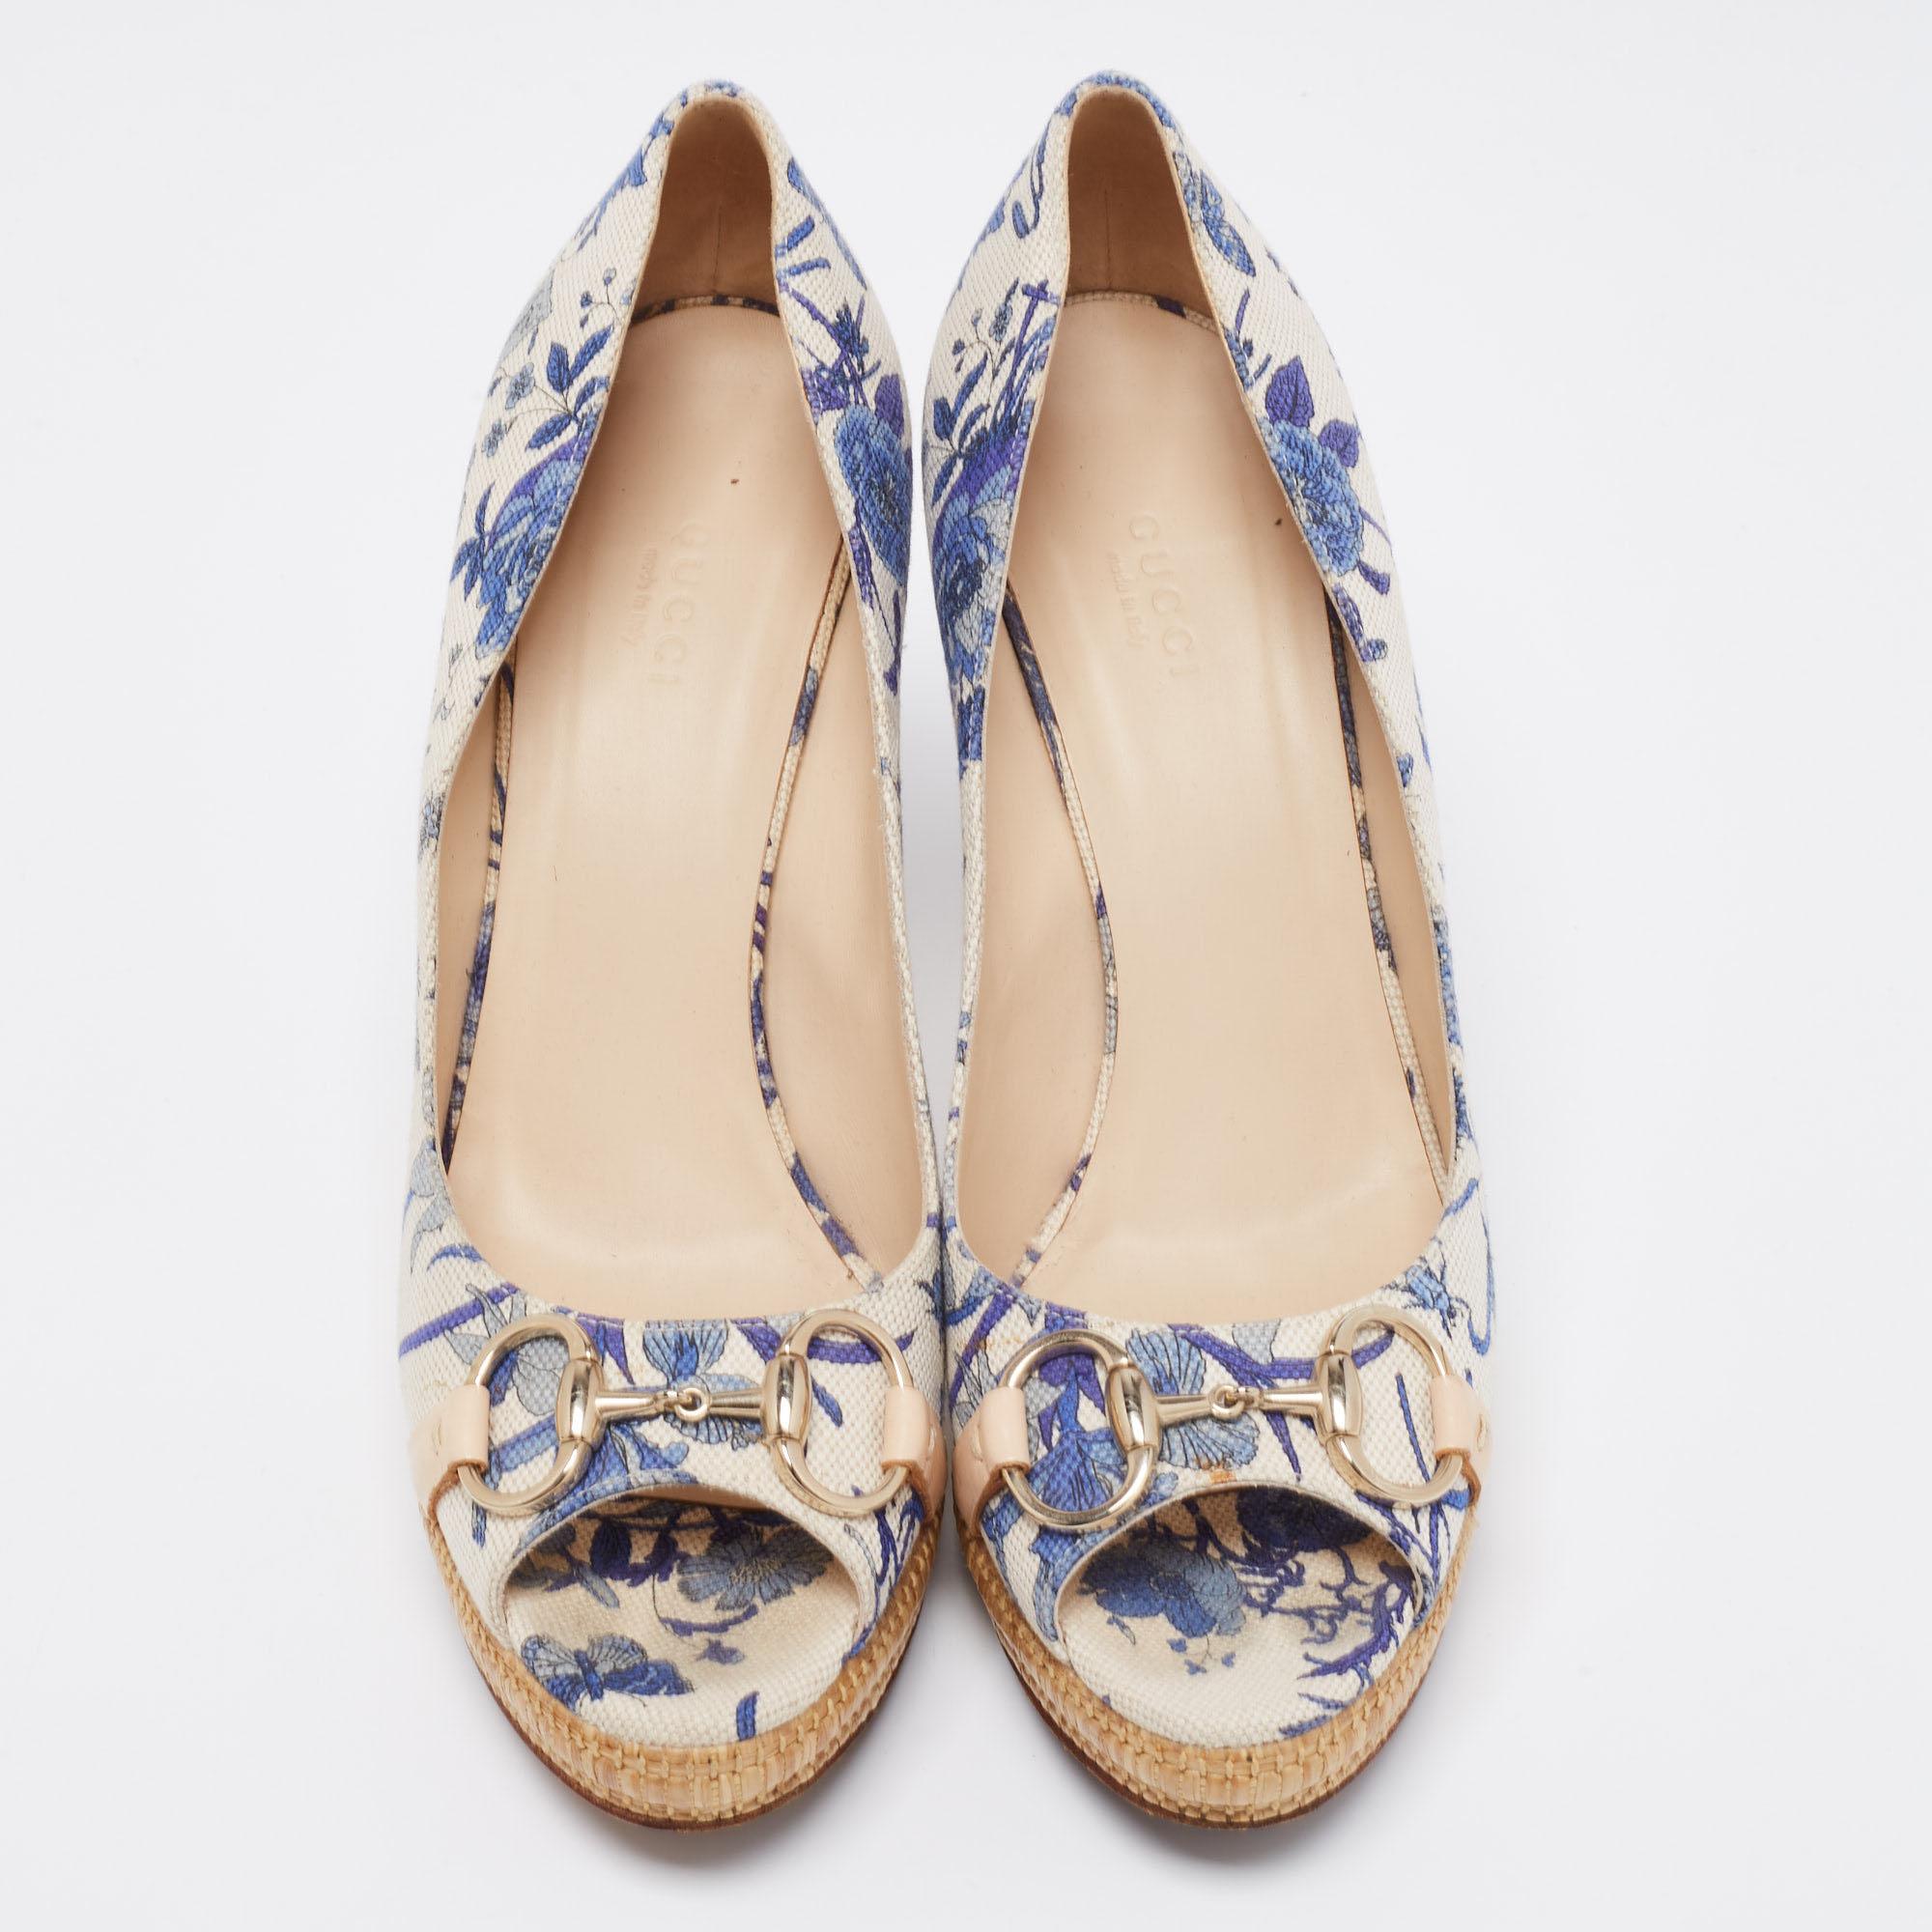 gucci blue floral heels